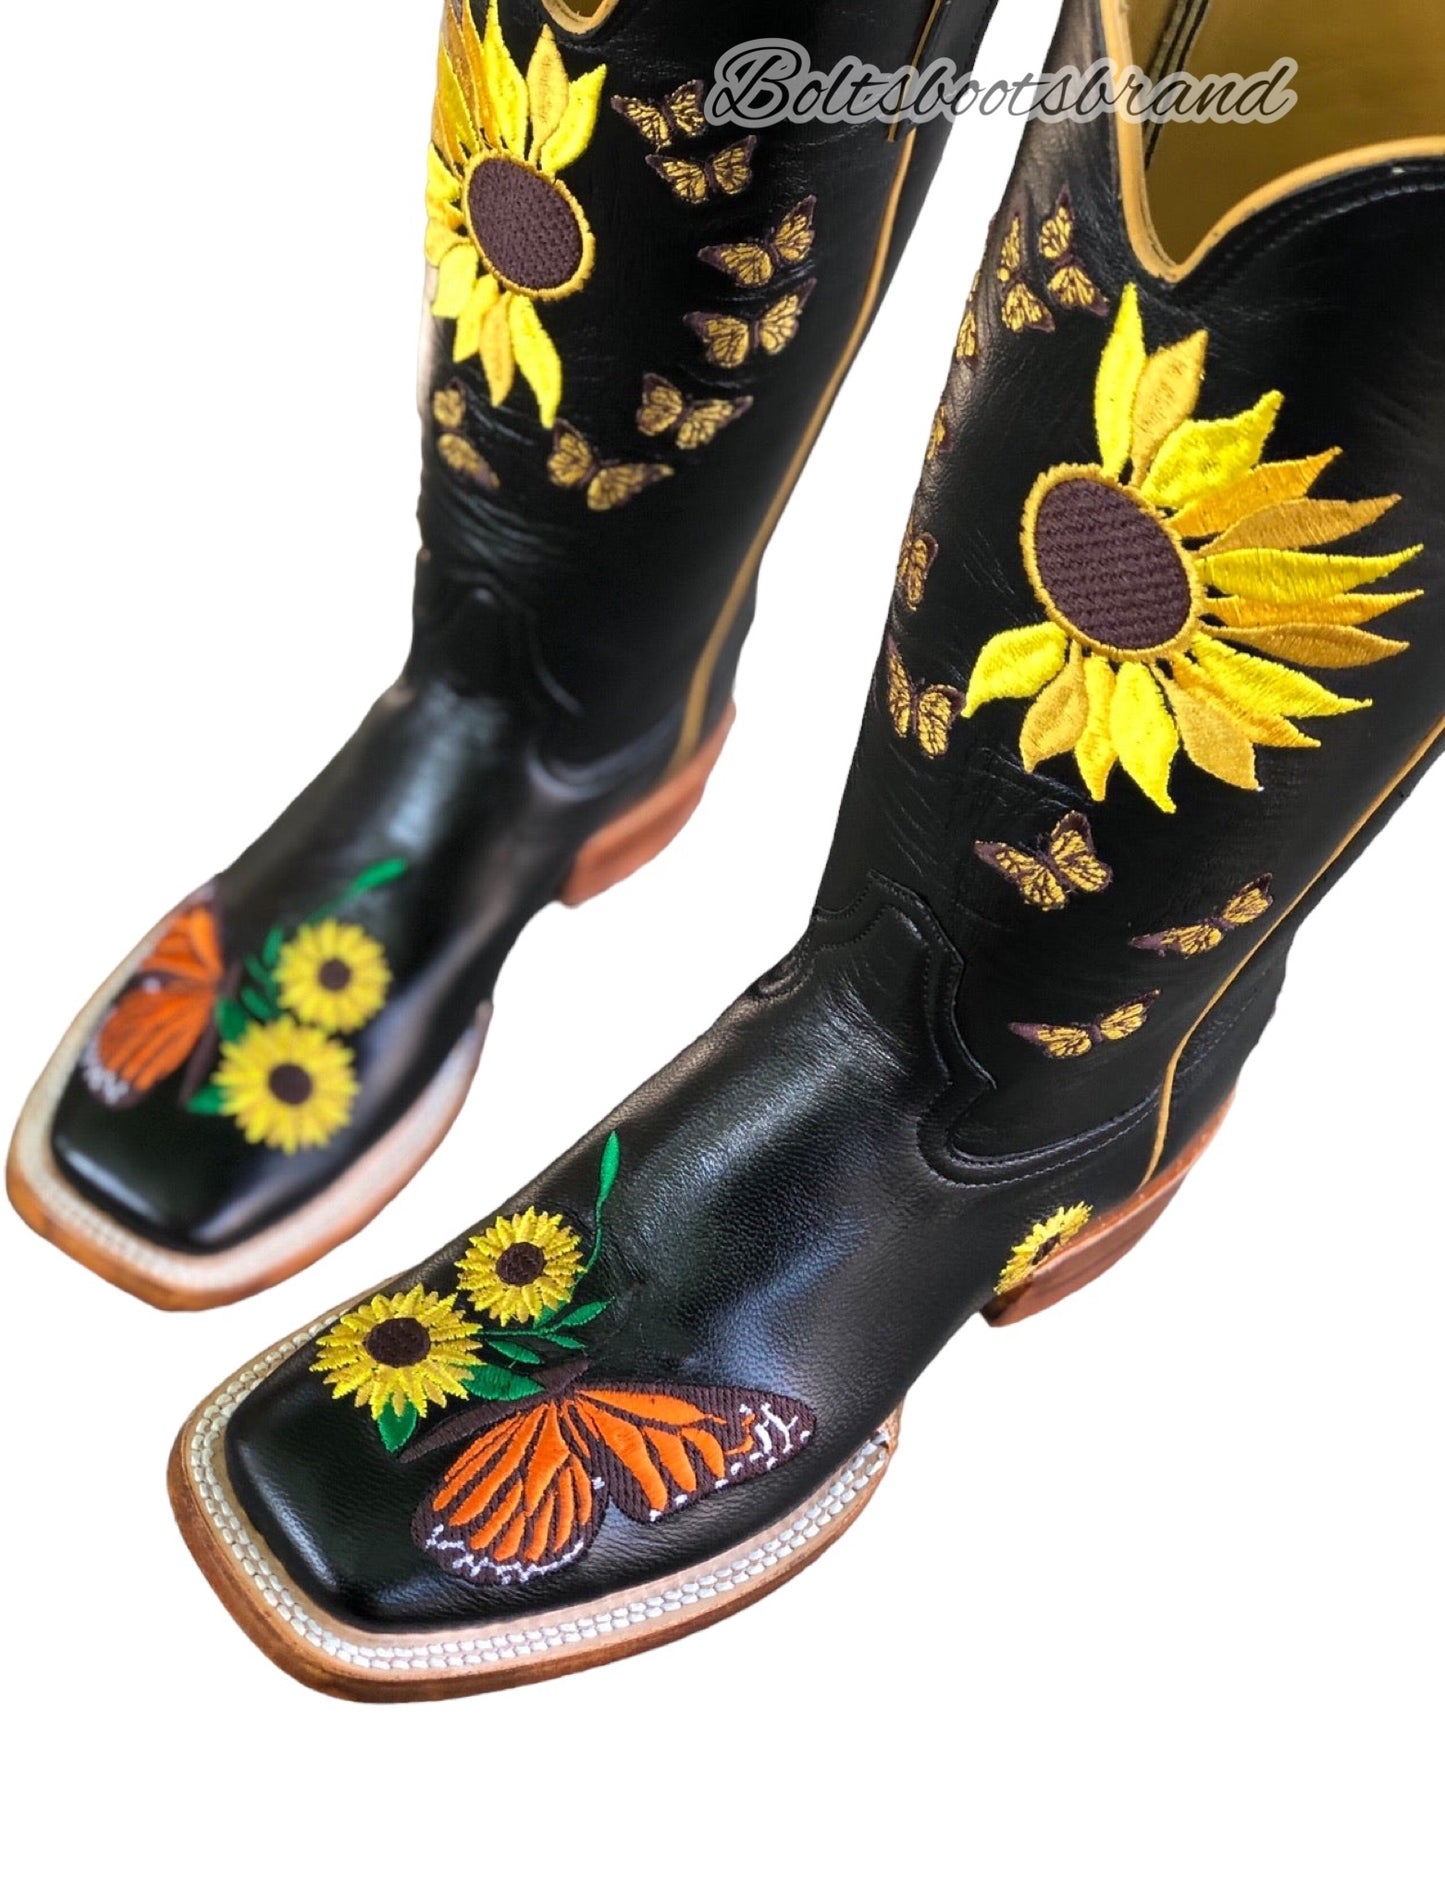 Sunflower butterflies 🧚🏽‍♂️🌻 embroidery design